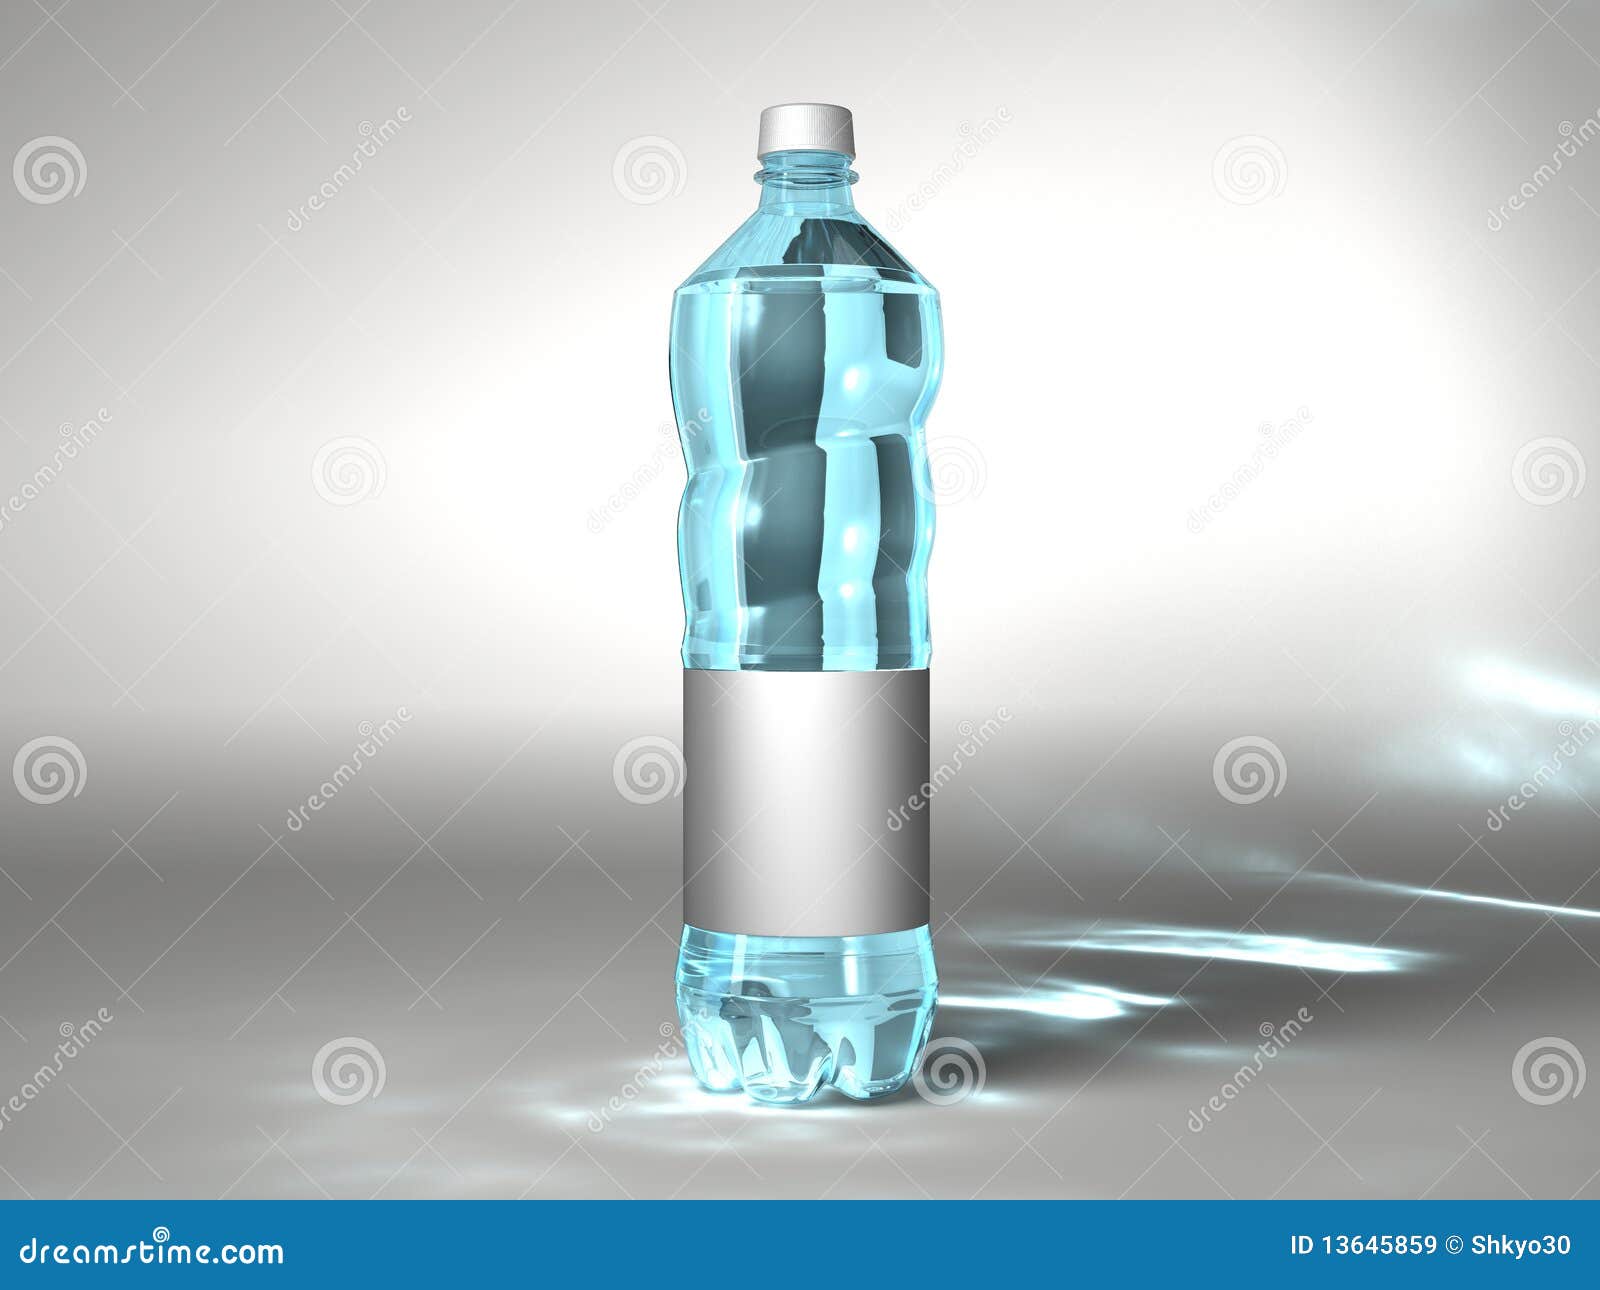 https://thumbs.dreamstime.com/z/neutral-water-bottle-13645859.jpg